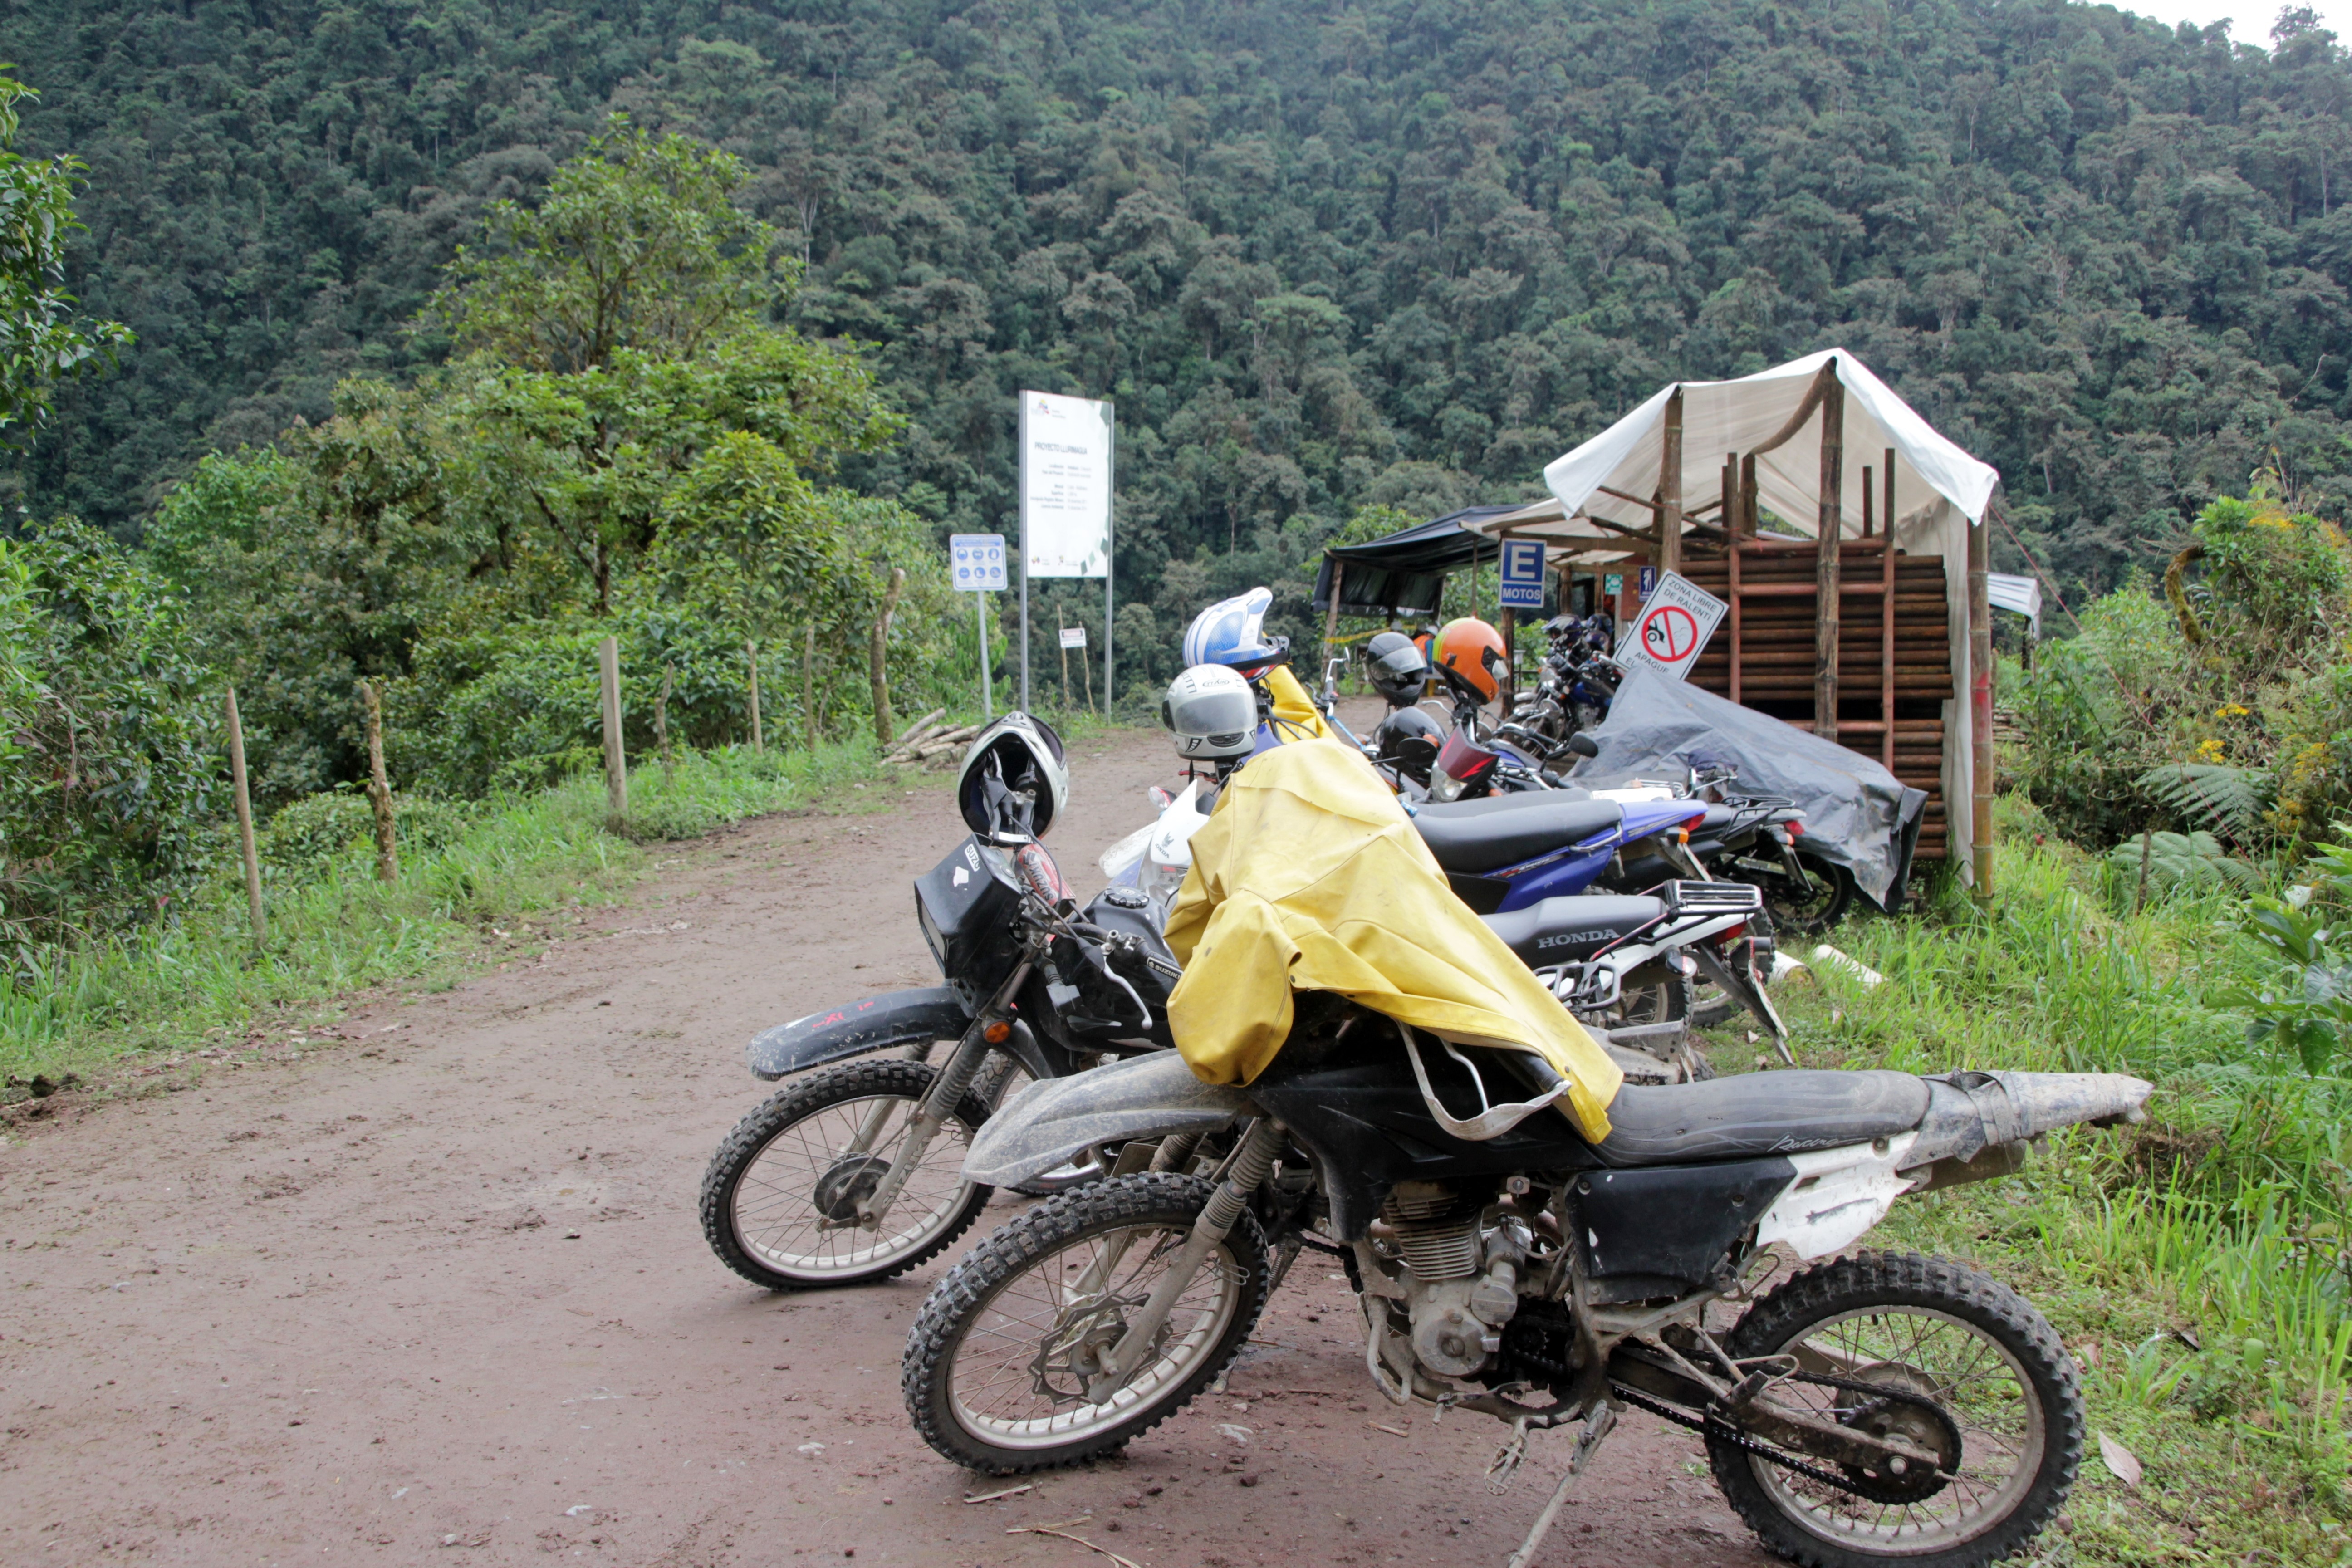 A l'entrée du campement, les motos des ouvriers devant la montagne verdoyante (© Jérôme Decoster).